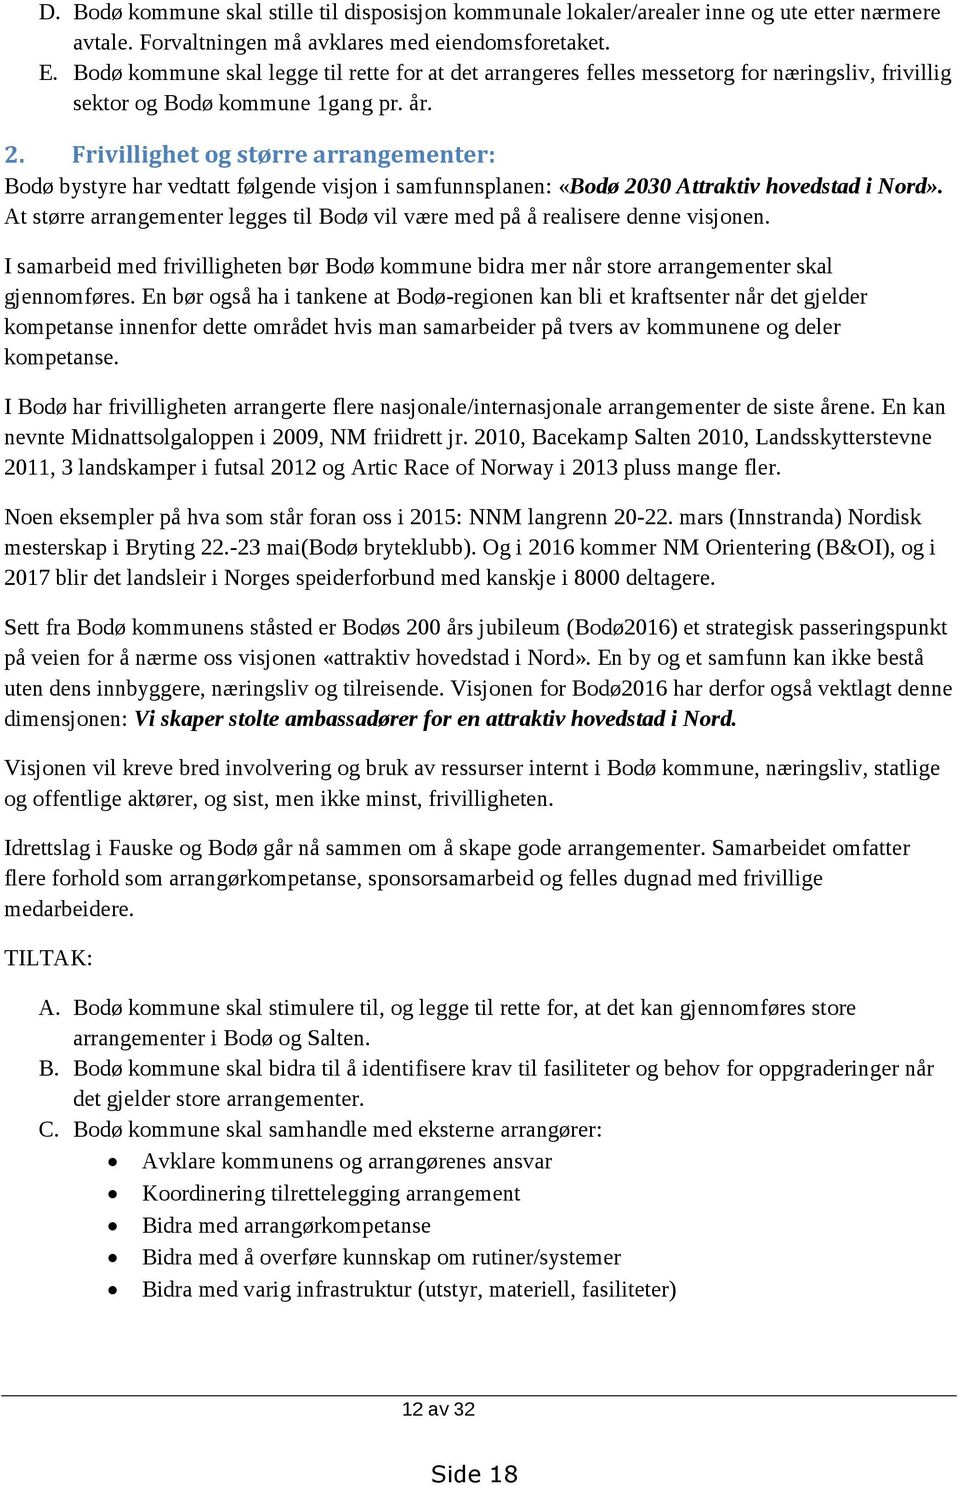 Frivillighet og større arrangementer: Bodø bystyre har vedtatt følgende visjon i samfunnsplanen: «Bodø 2030 Attraktiv hovedstad i Nord».